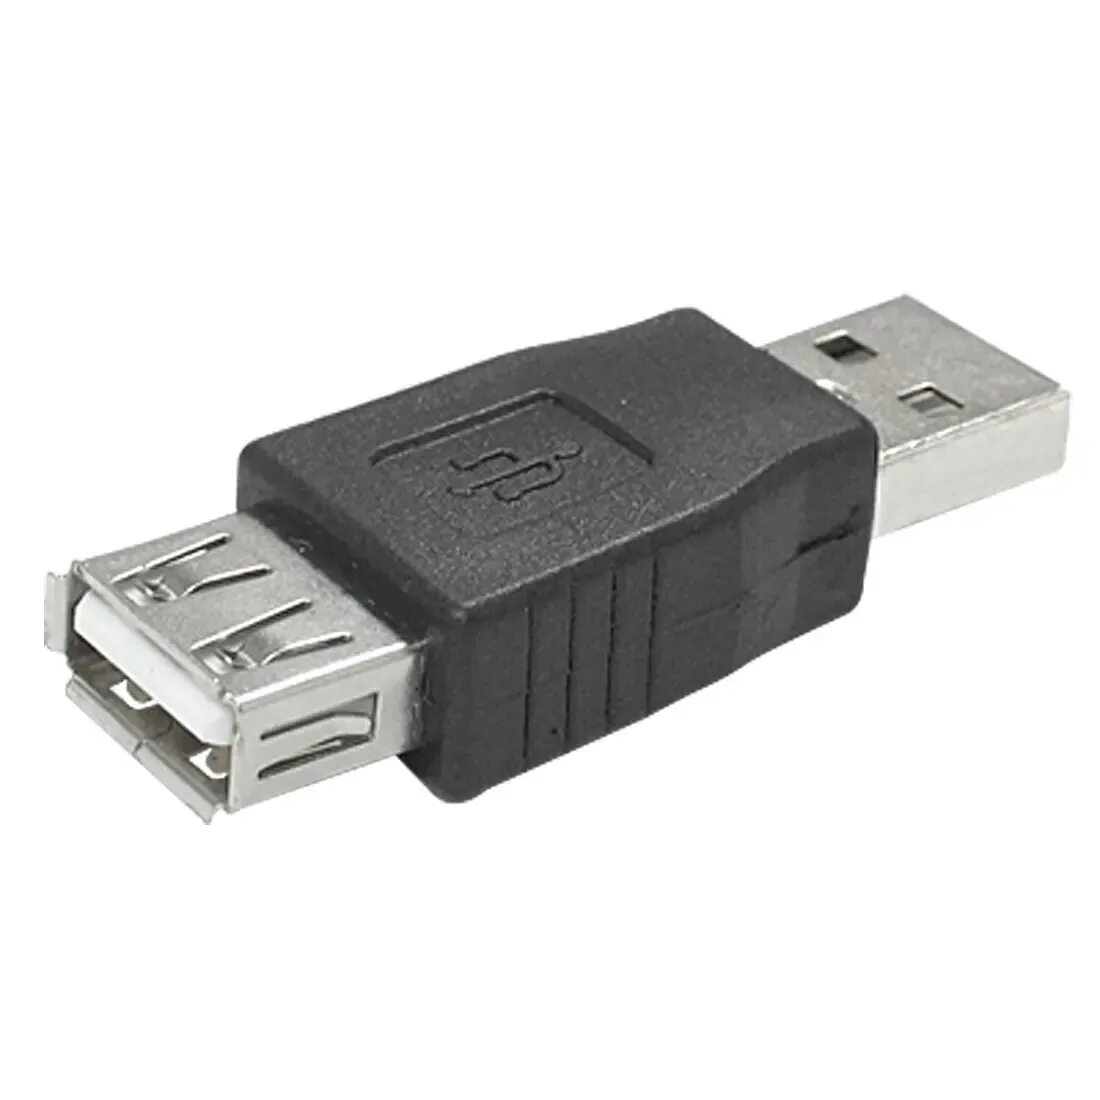 High usb 2.0. Переходник USB (ГН. USB А - Micro шт. USB А) Rexant. USB 2.0 коннектор Type-a. Переходник USB 2.0 Type a male to Type c. Переходник USB male male.